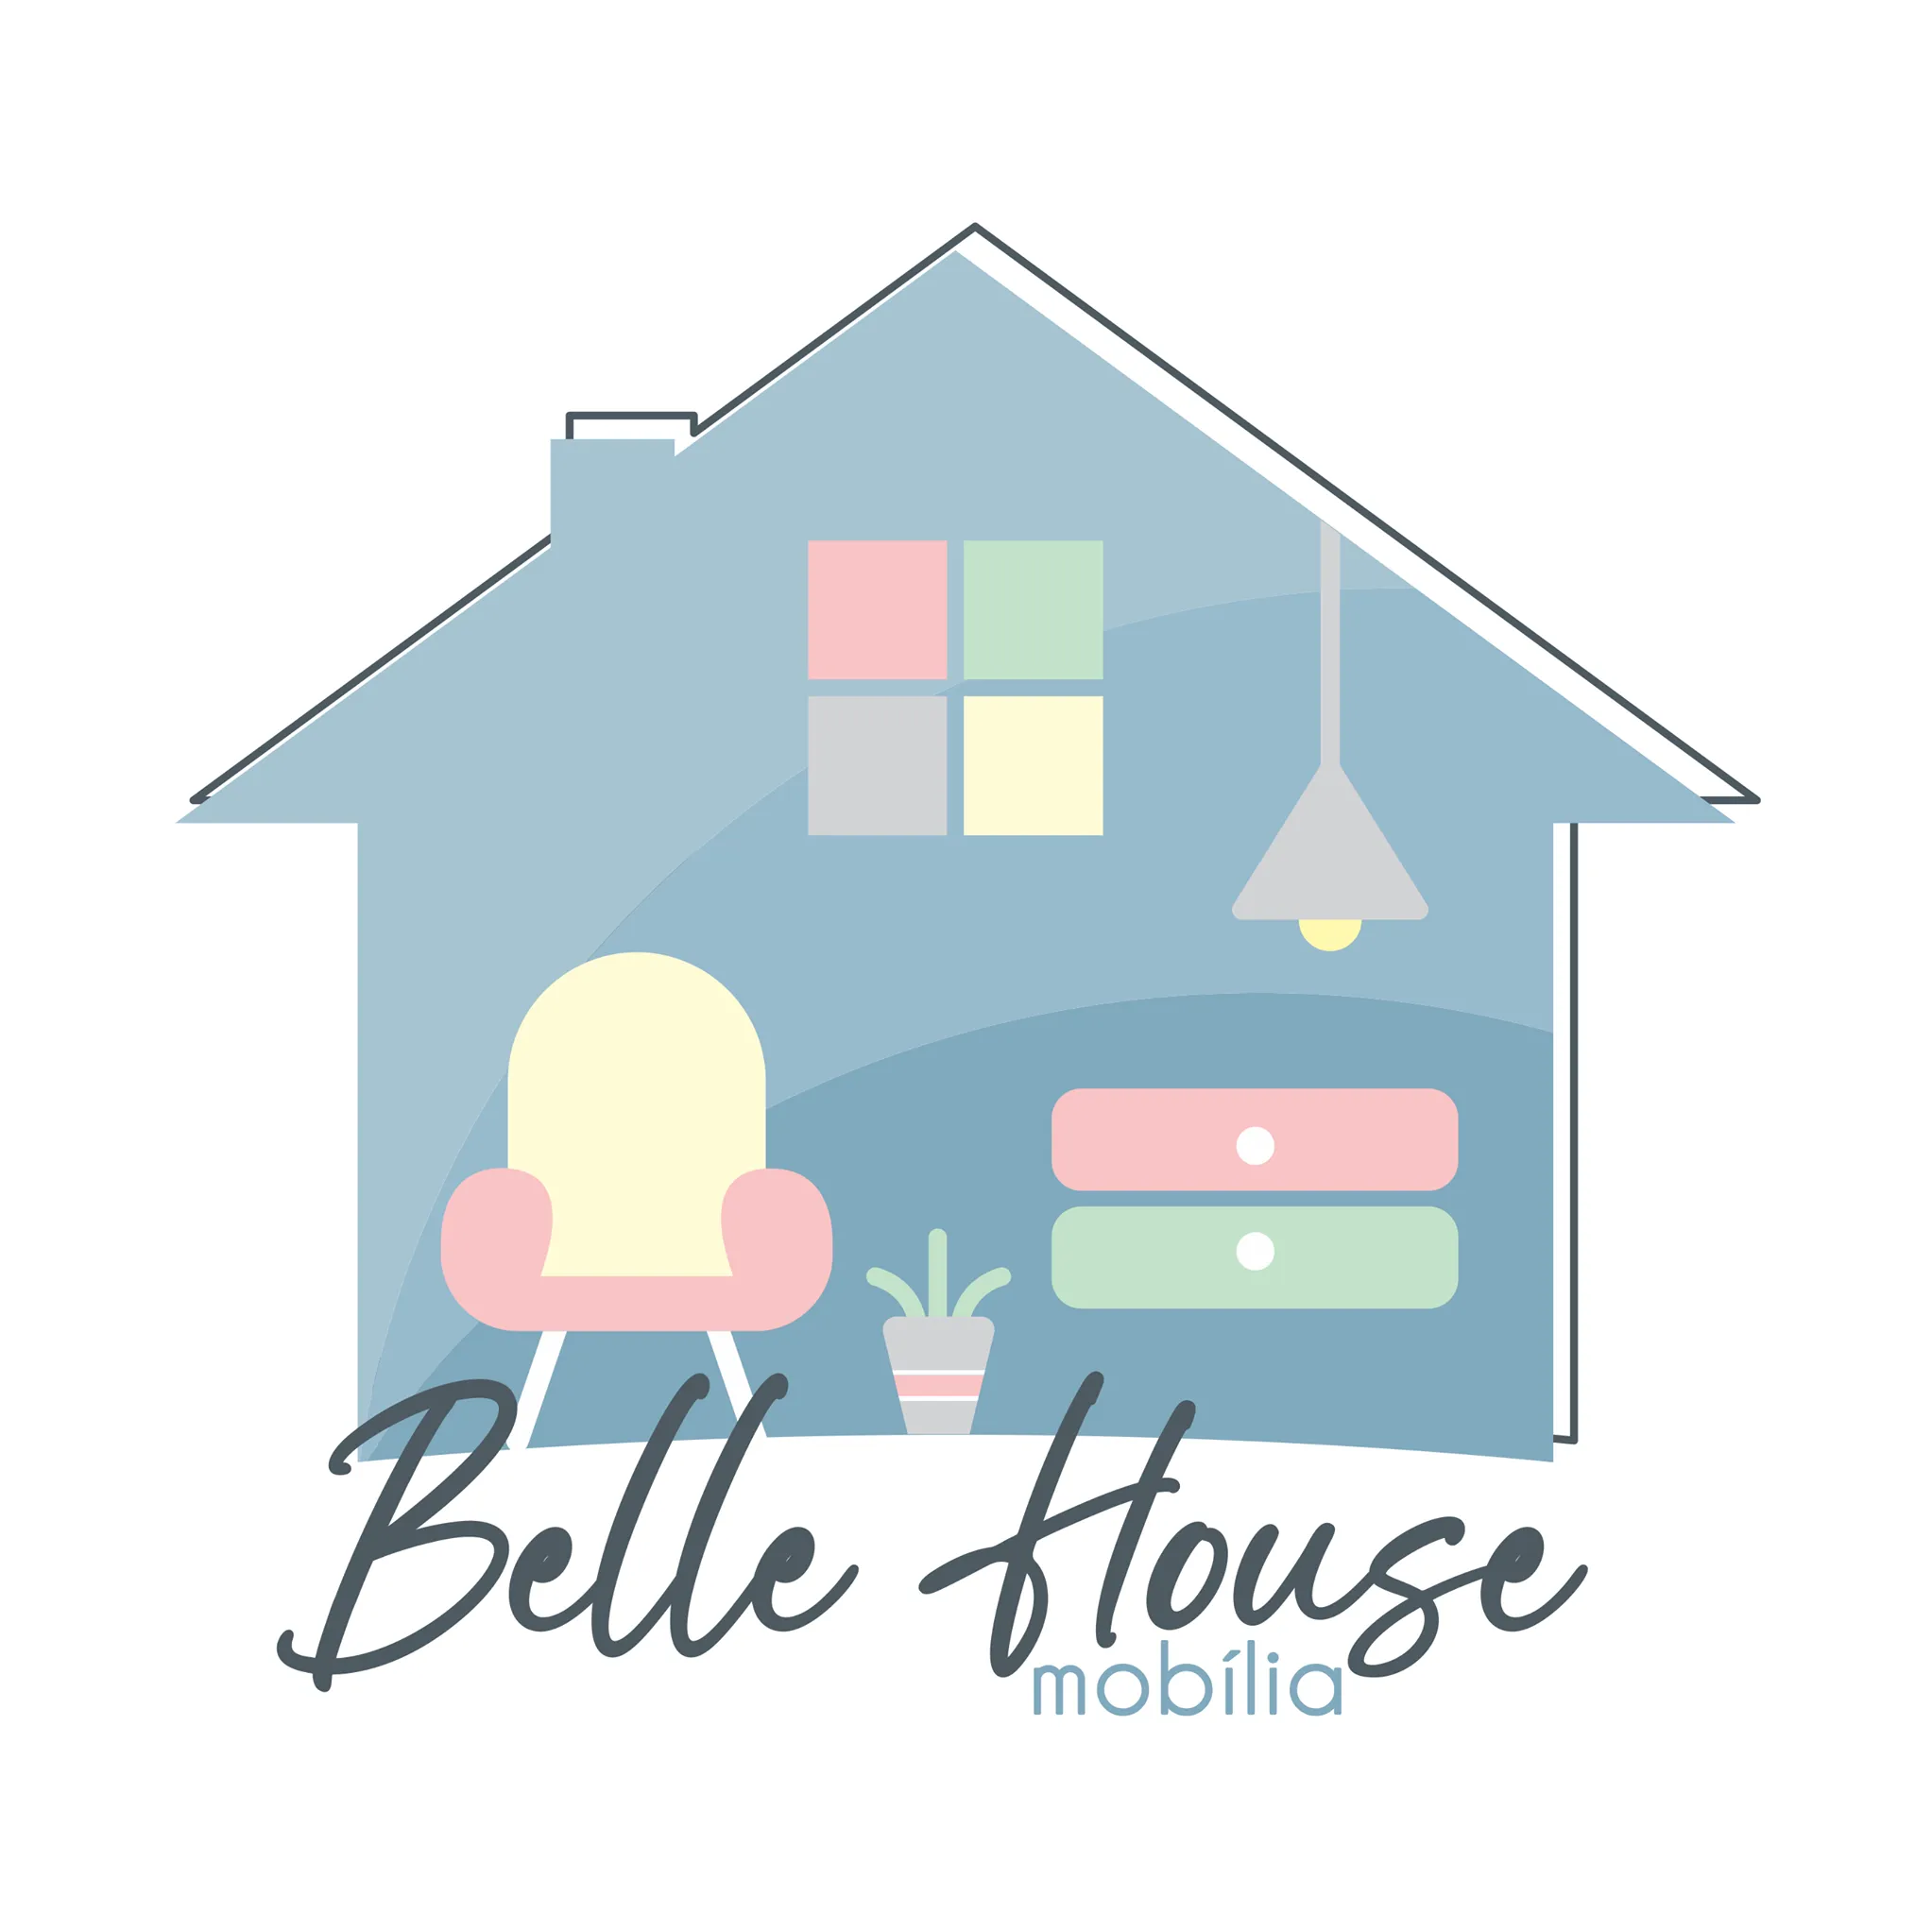 bellehousemobilia.com.br